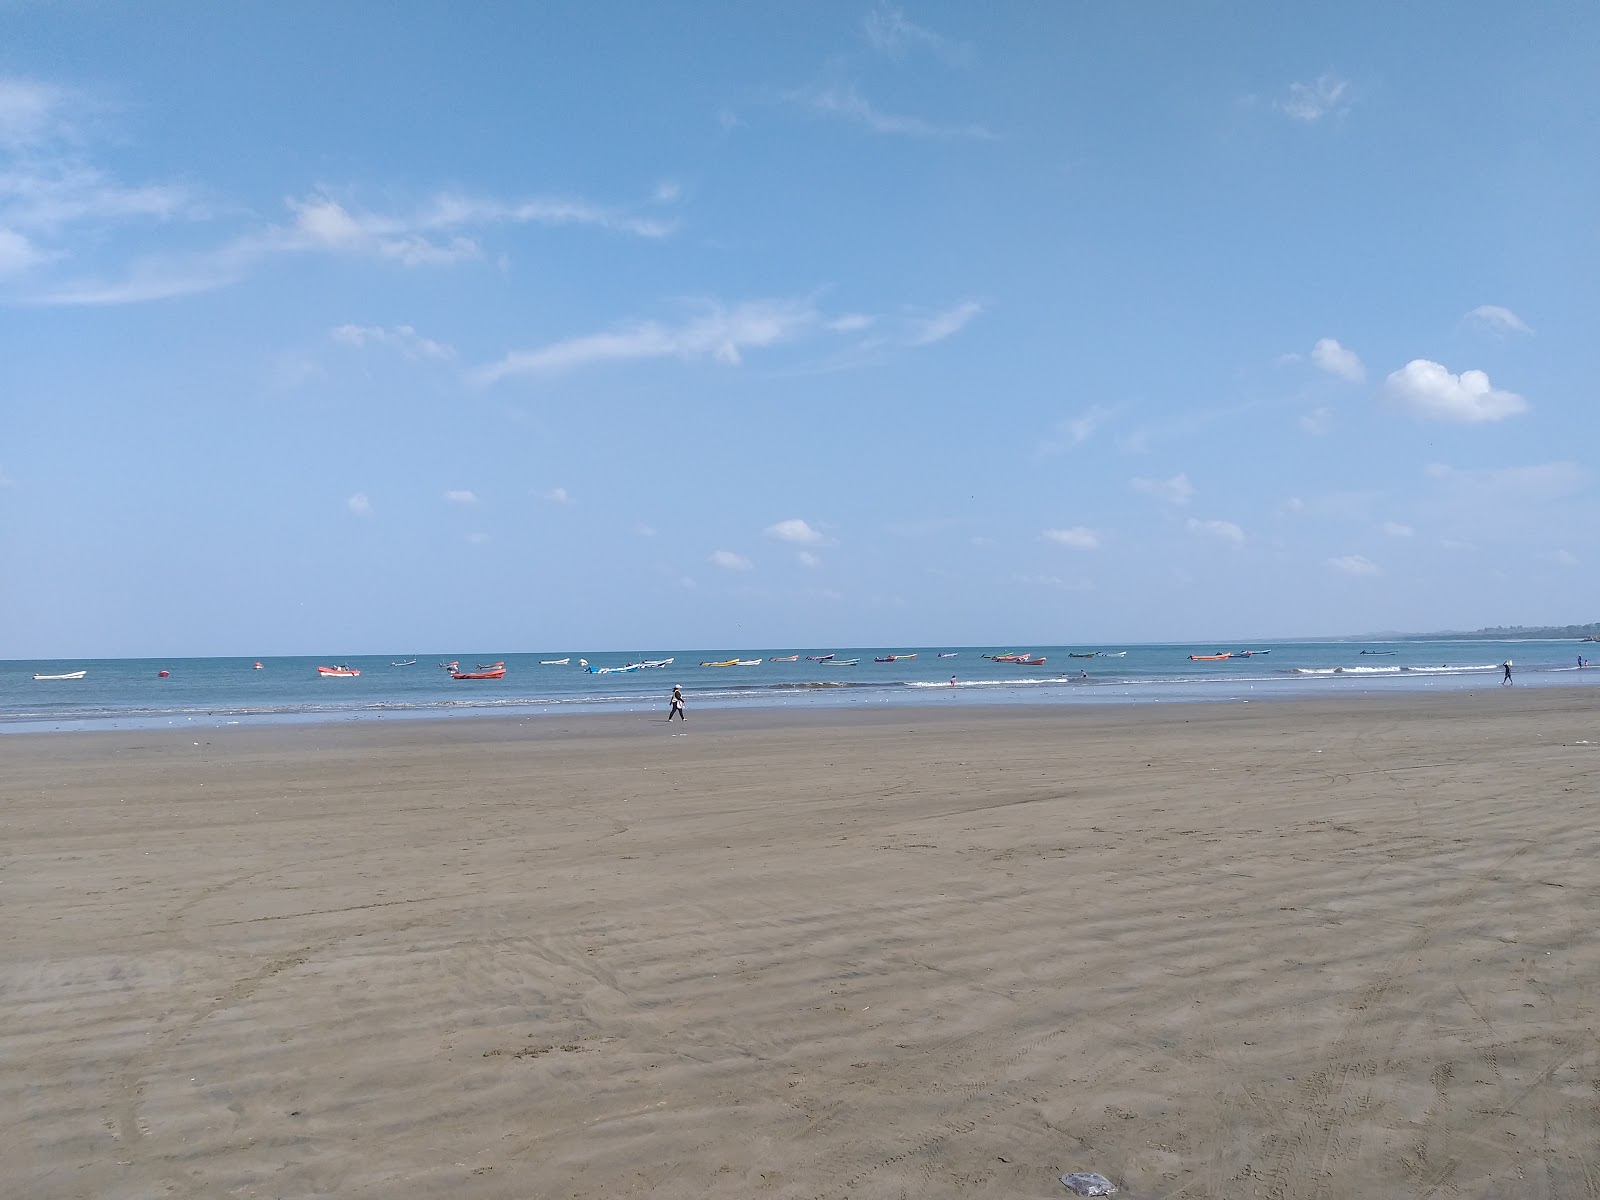 Photo de Masachapa beach - endroit populaire parmi les connaisseurs de la détente